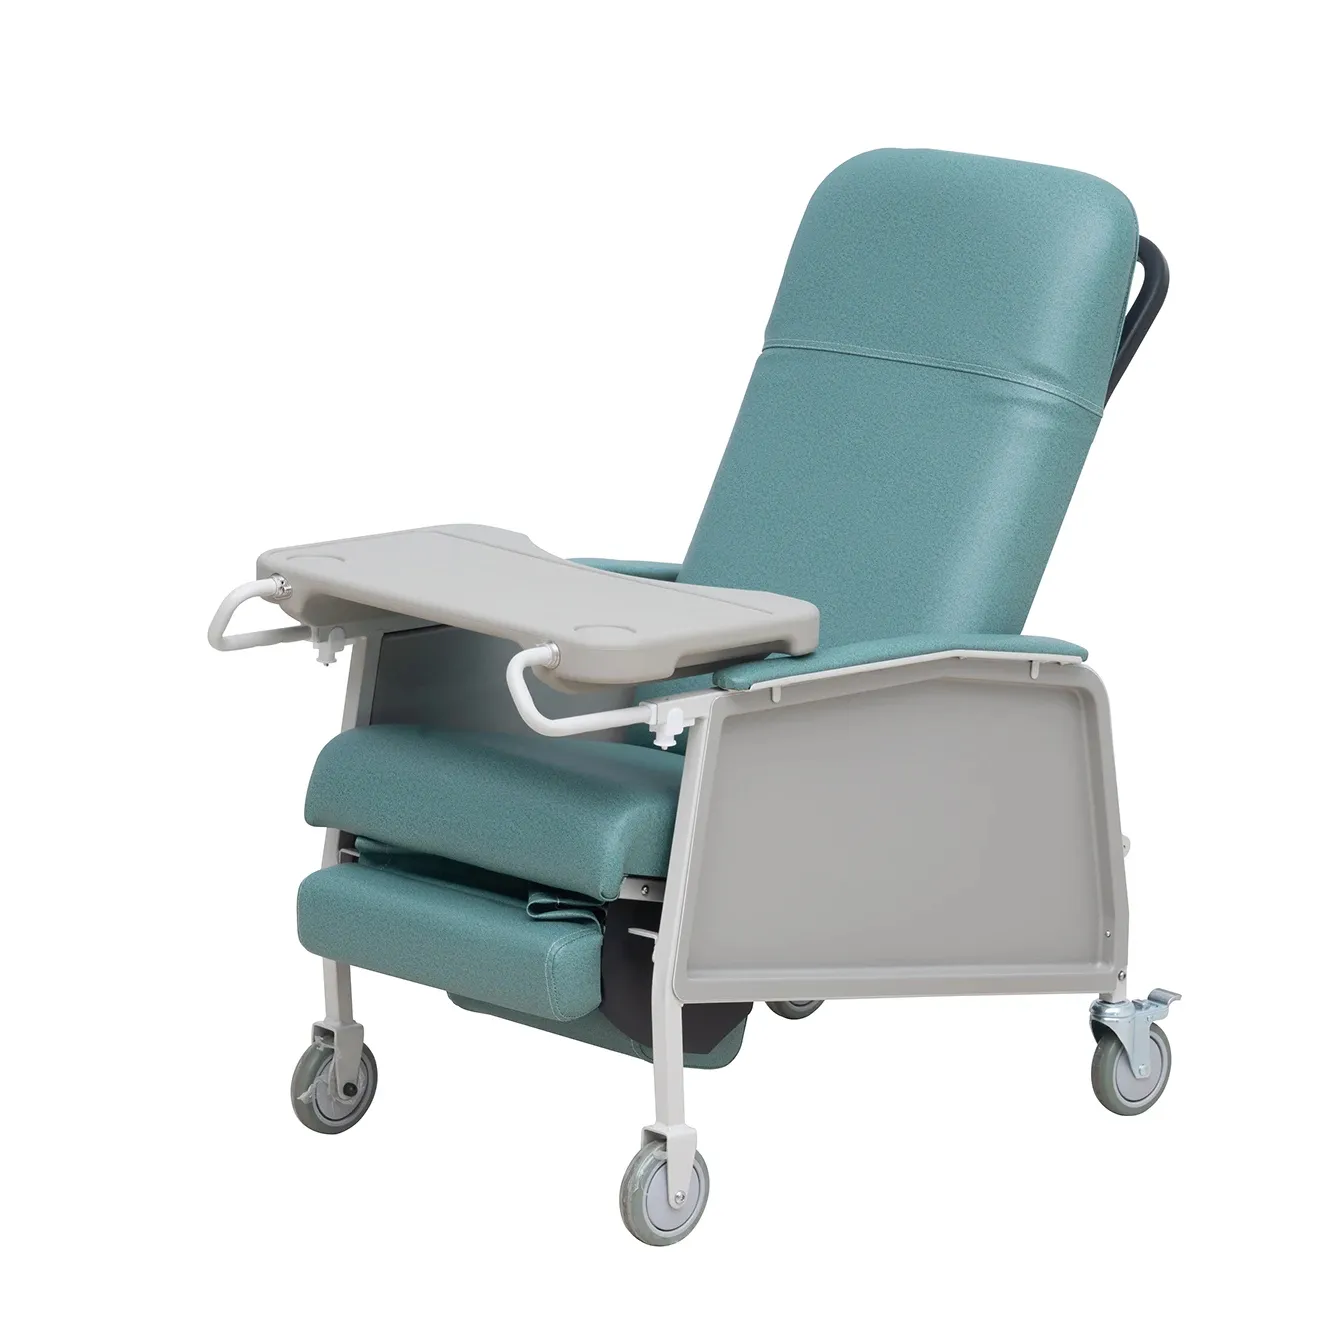 كرسي نقل دماء يدوي LR602 بثلاثة أوضاع كرسي طبي مع عمود IV وطاولة طعام